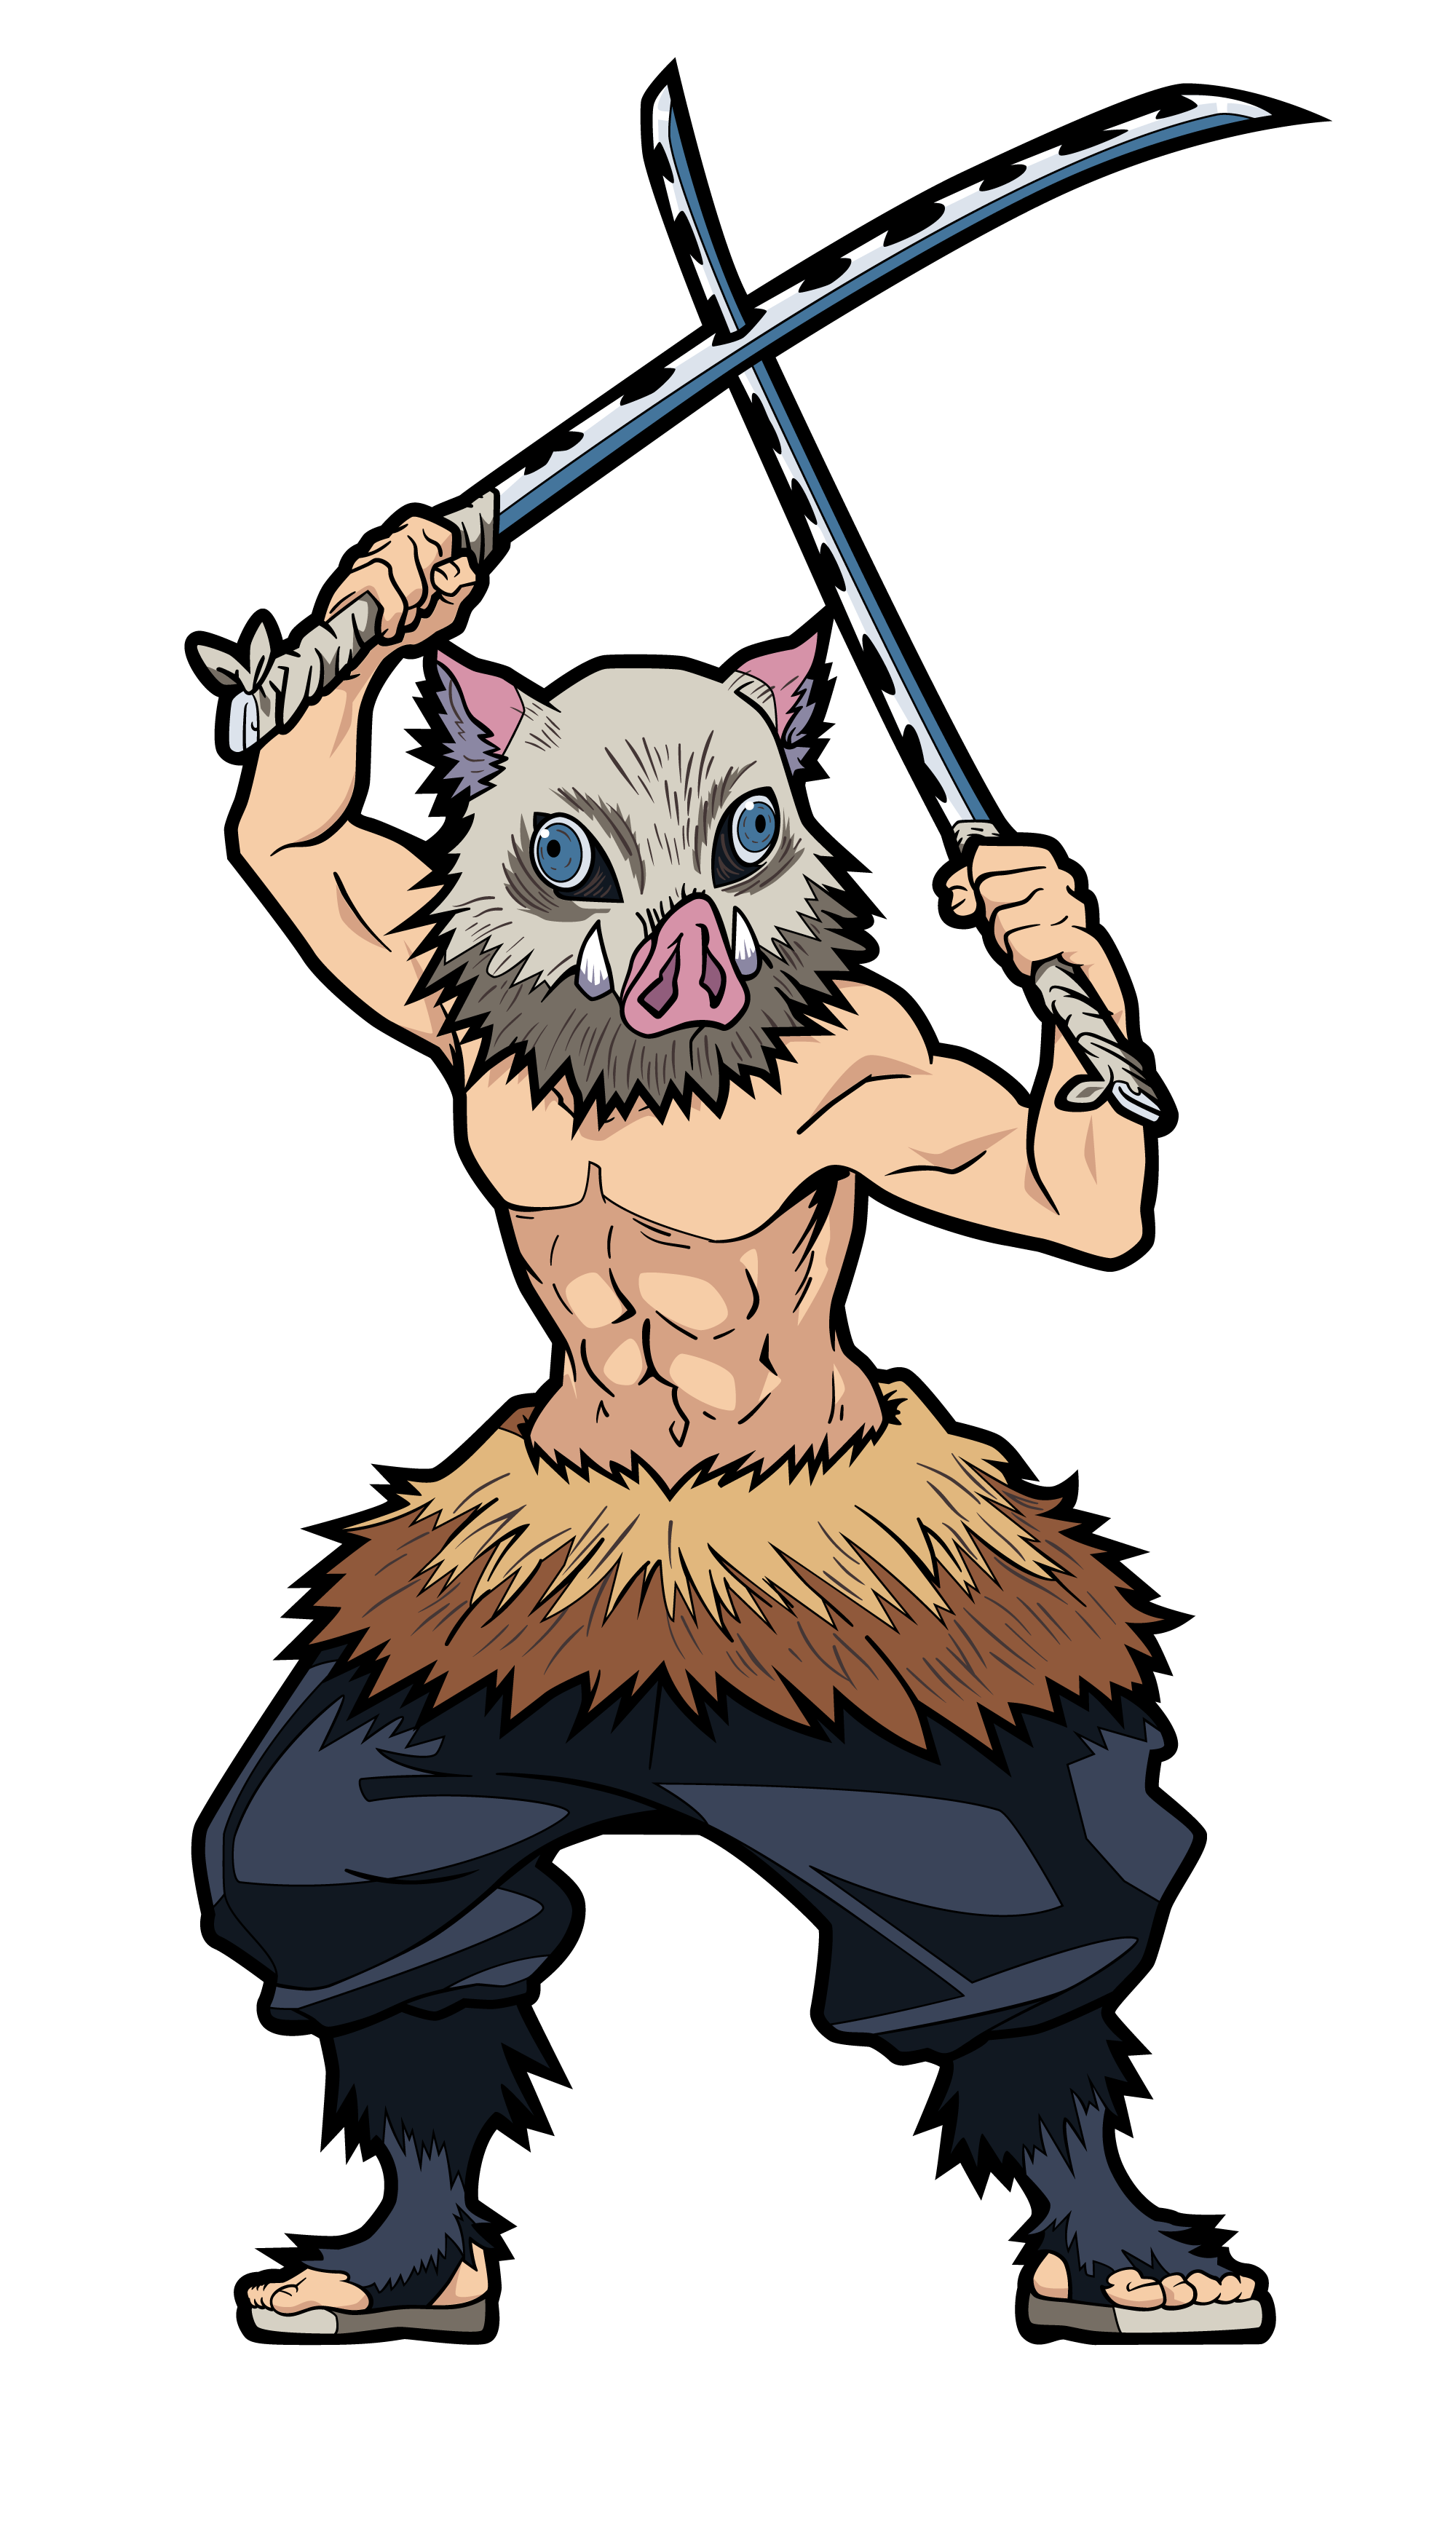  FiGPiN: Demon Slayer - Shinobu Kocho #490